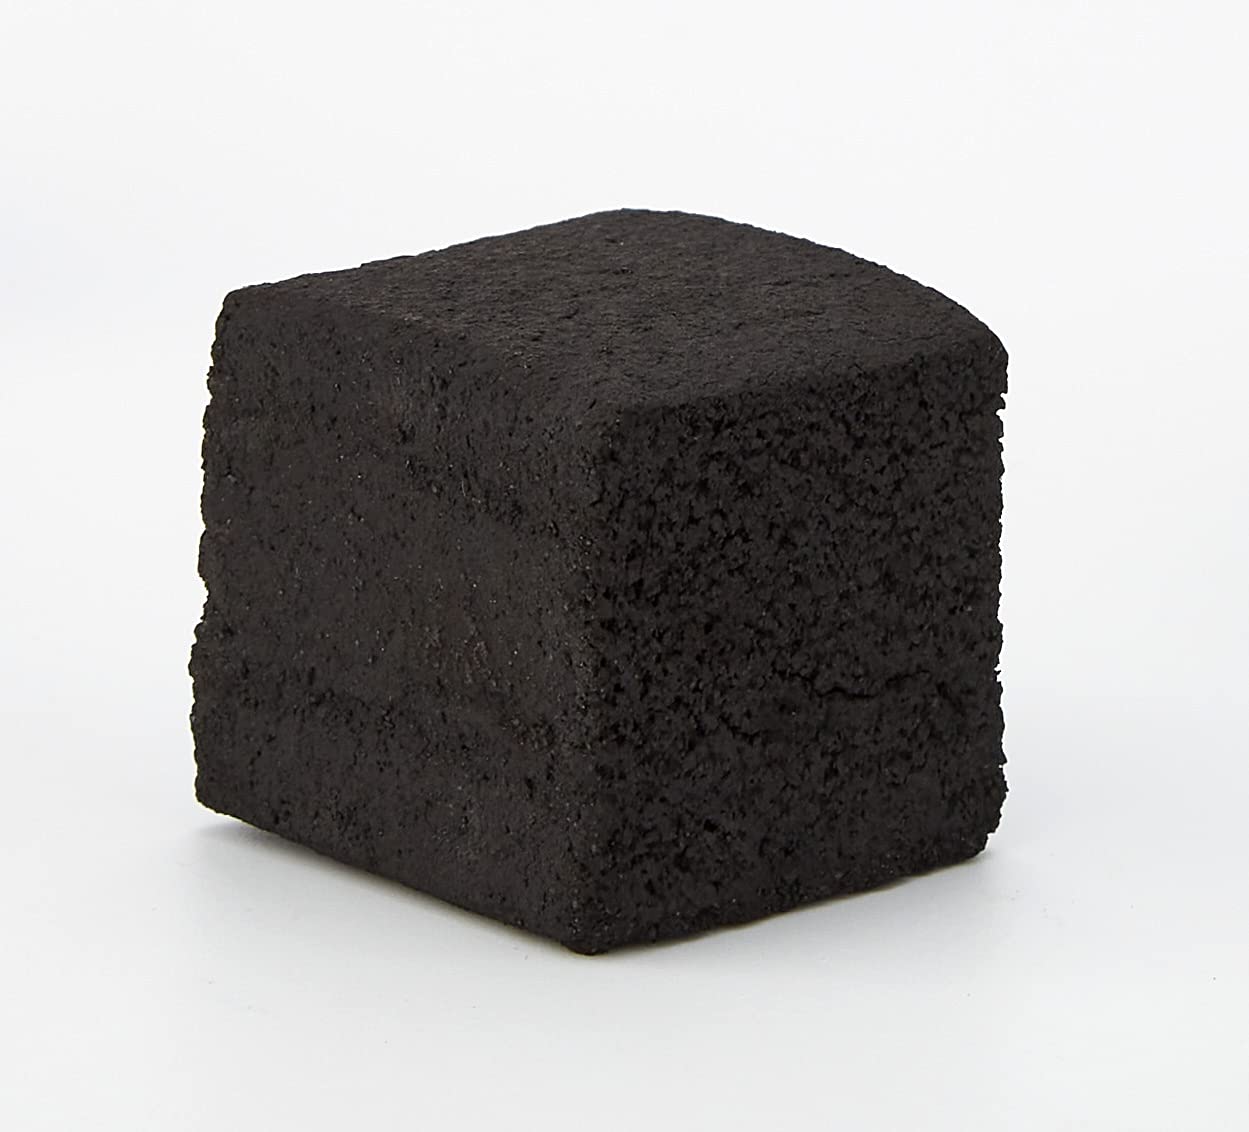 Tom Coco Gold Natural Cubes Coconut Charcoal Briquettes Carbon Shisha Hookah 1Kg